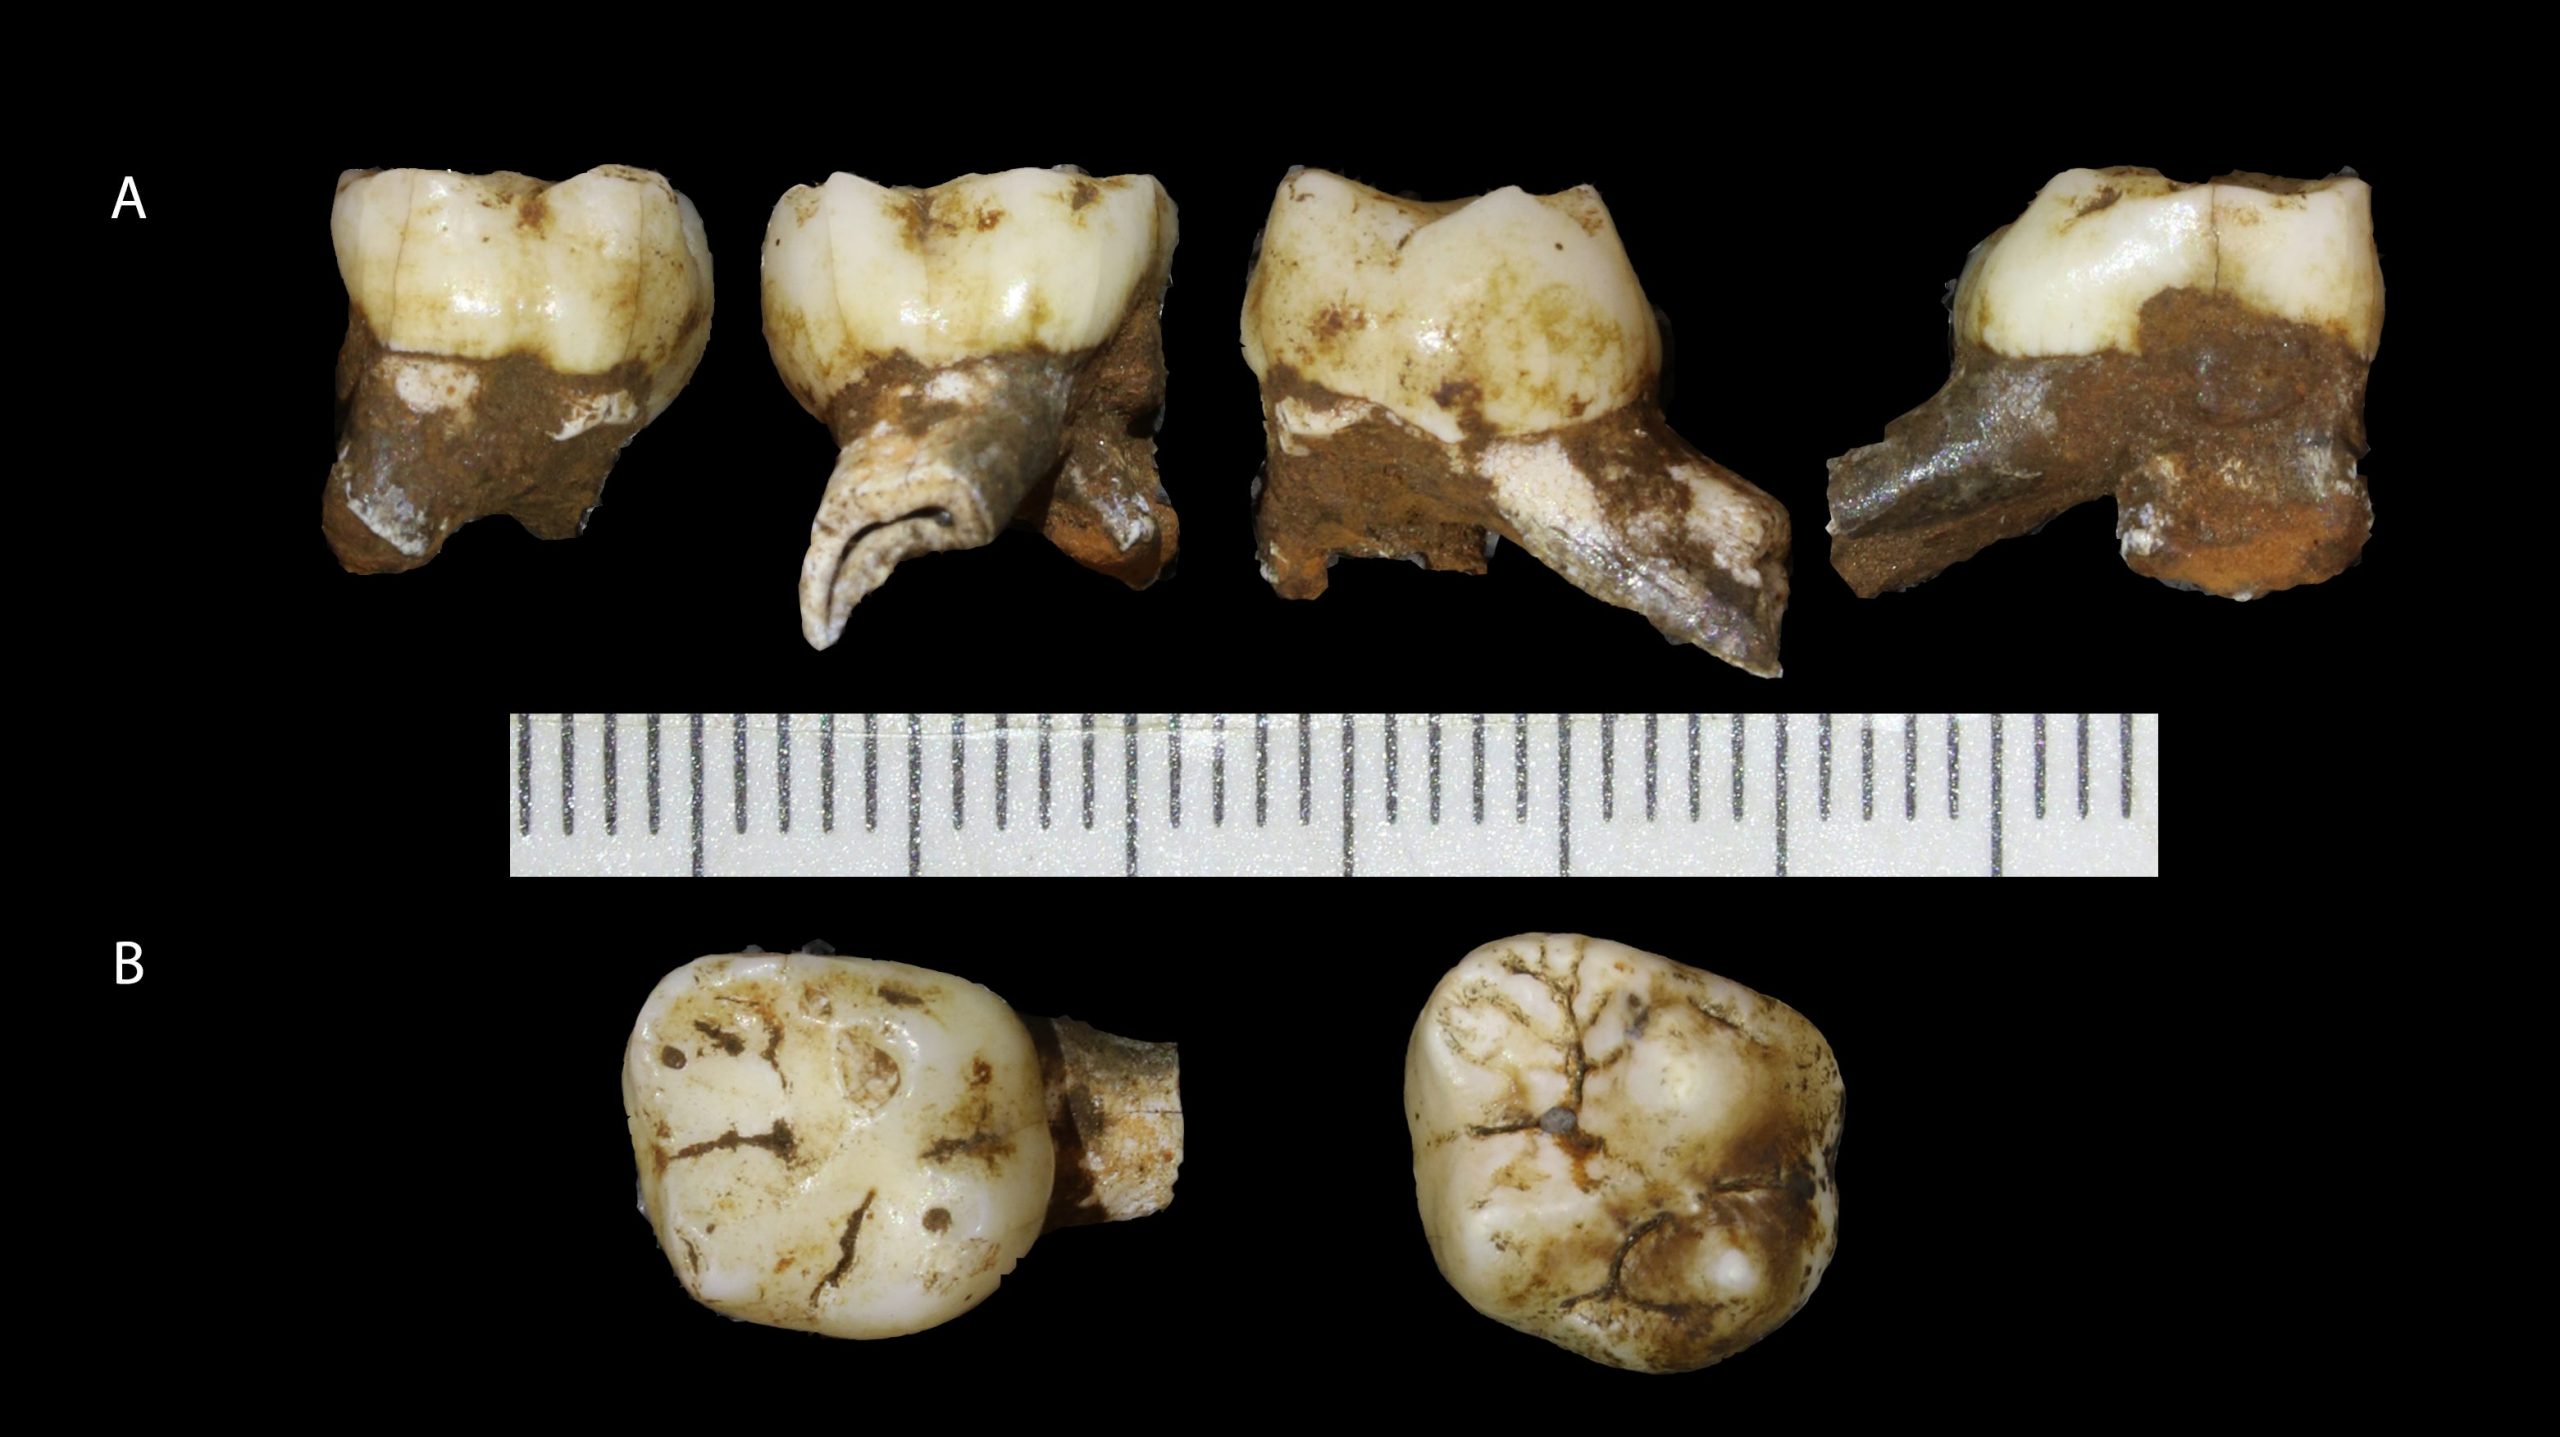 homo naledi leti child skull teeth